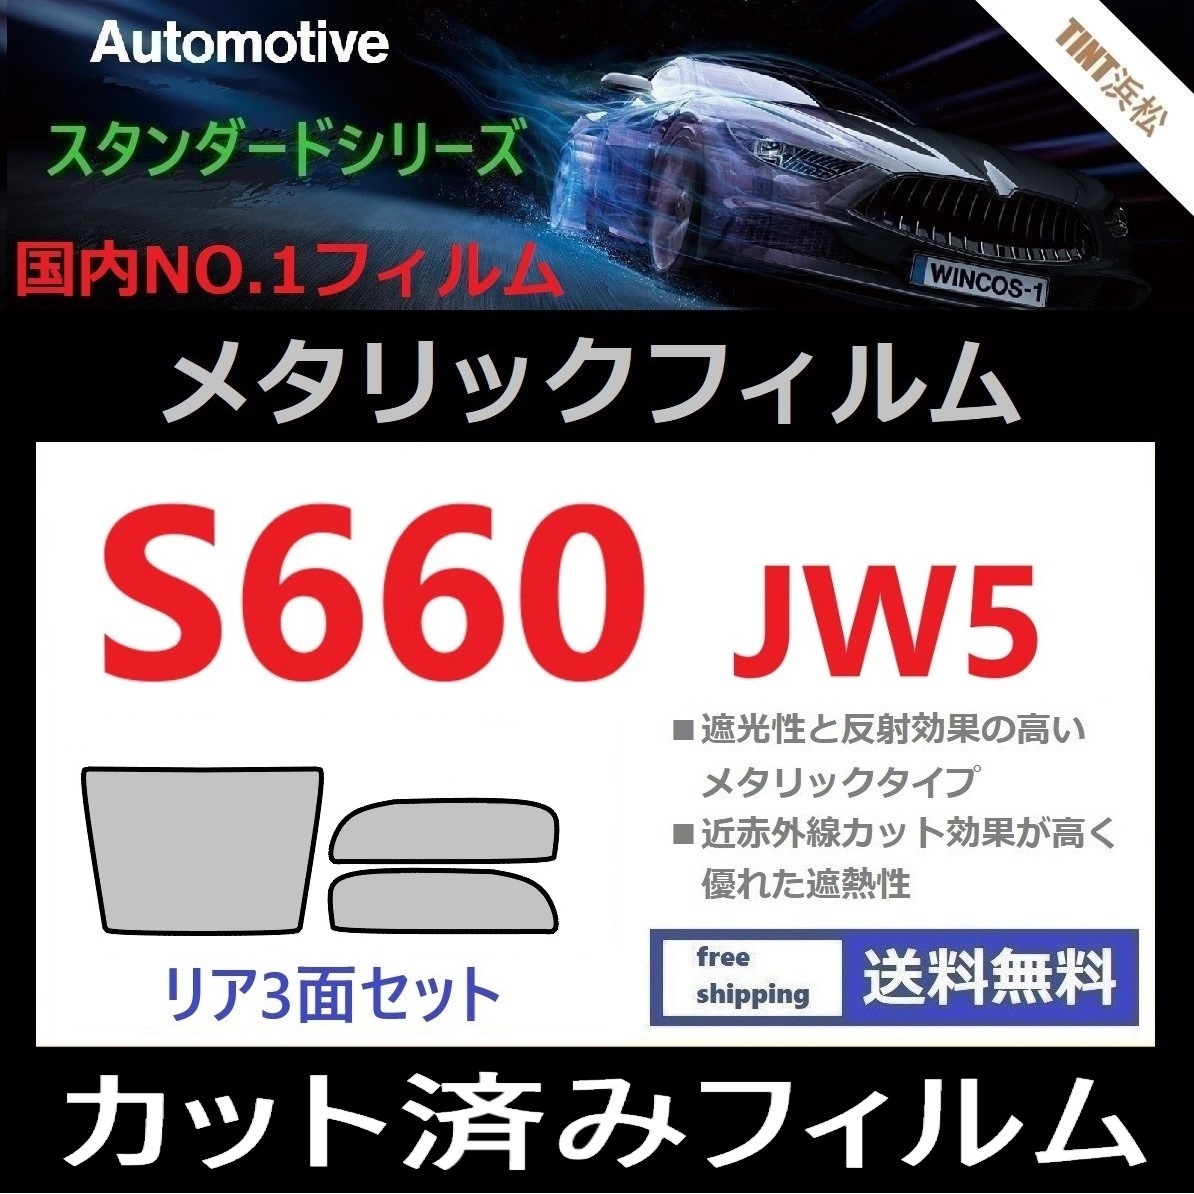 ◆カット済みフィルム◆ S660 JW5 【シルバー】【ミラーフィルム】【SL‐18‐25HD】_画像1